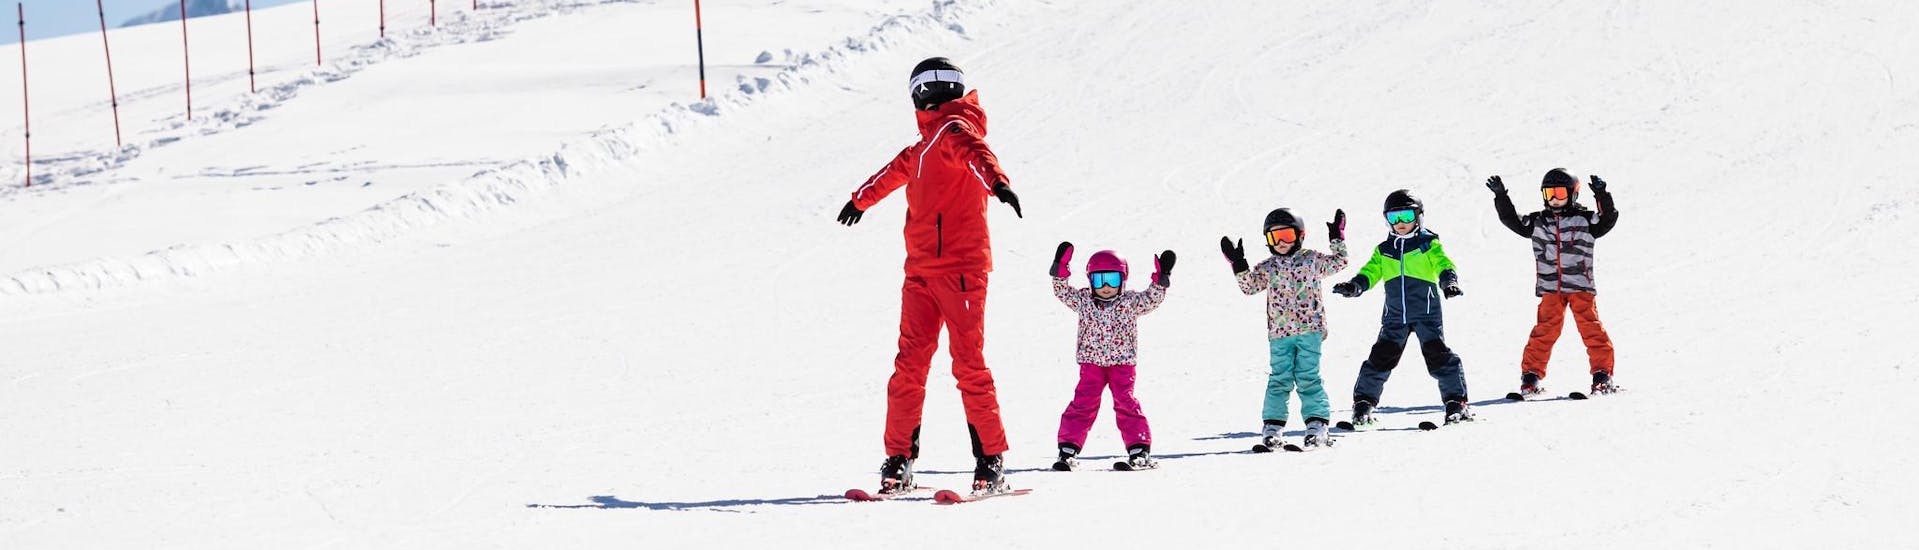 Instructor de esquí y niños esquiando por las pistas durante una clase de esquí.